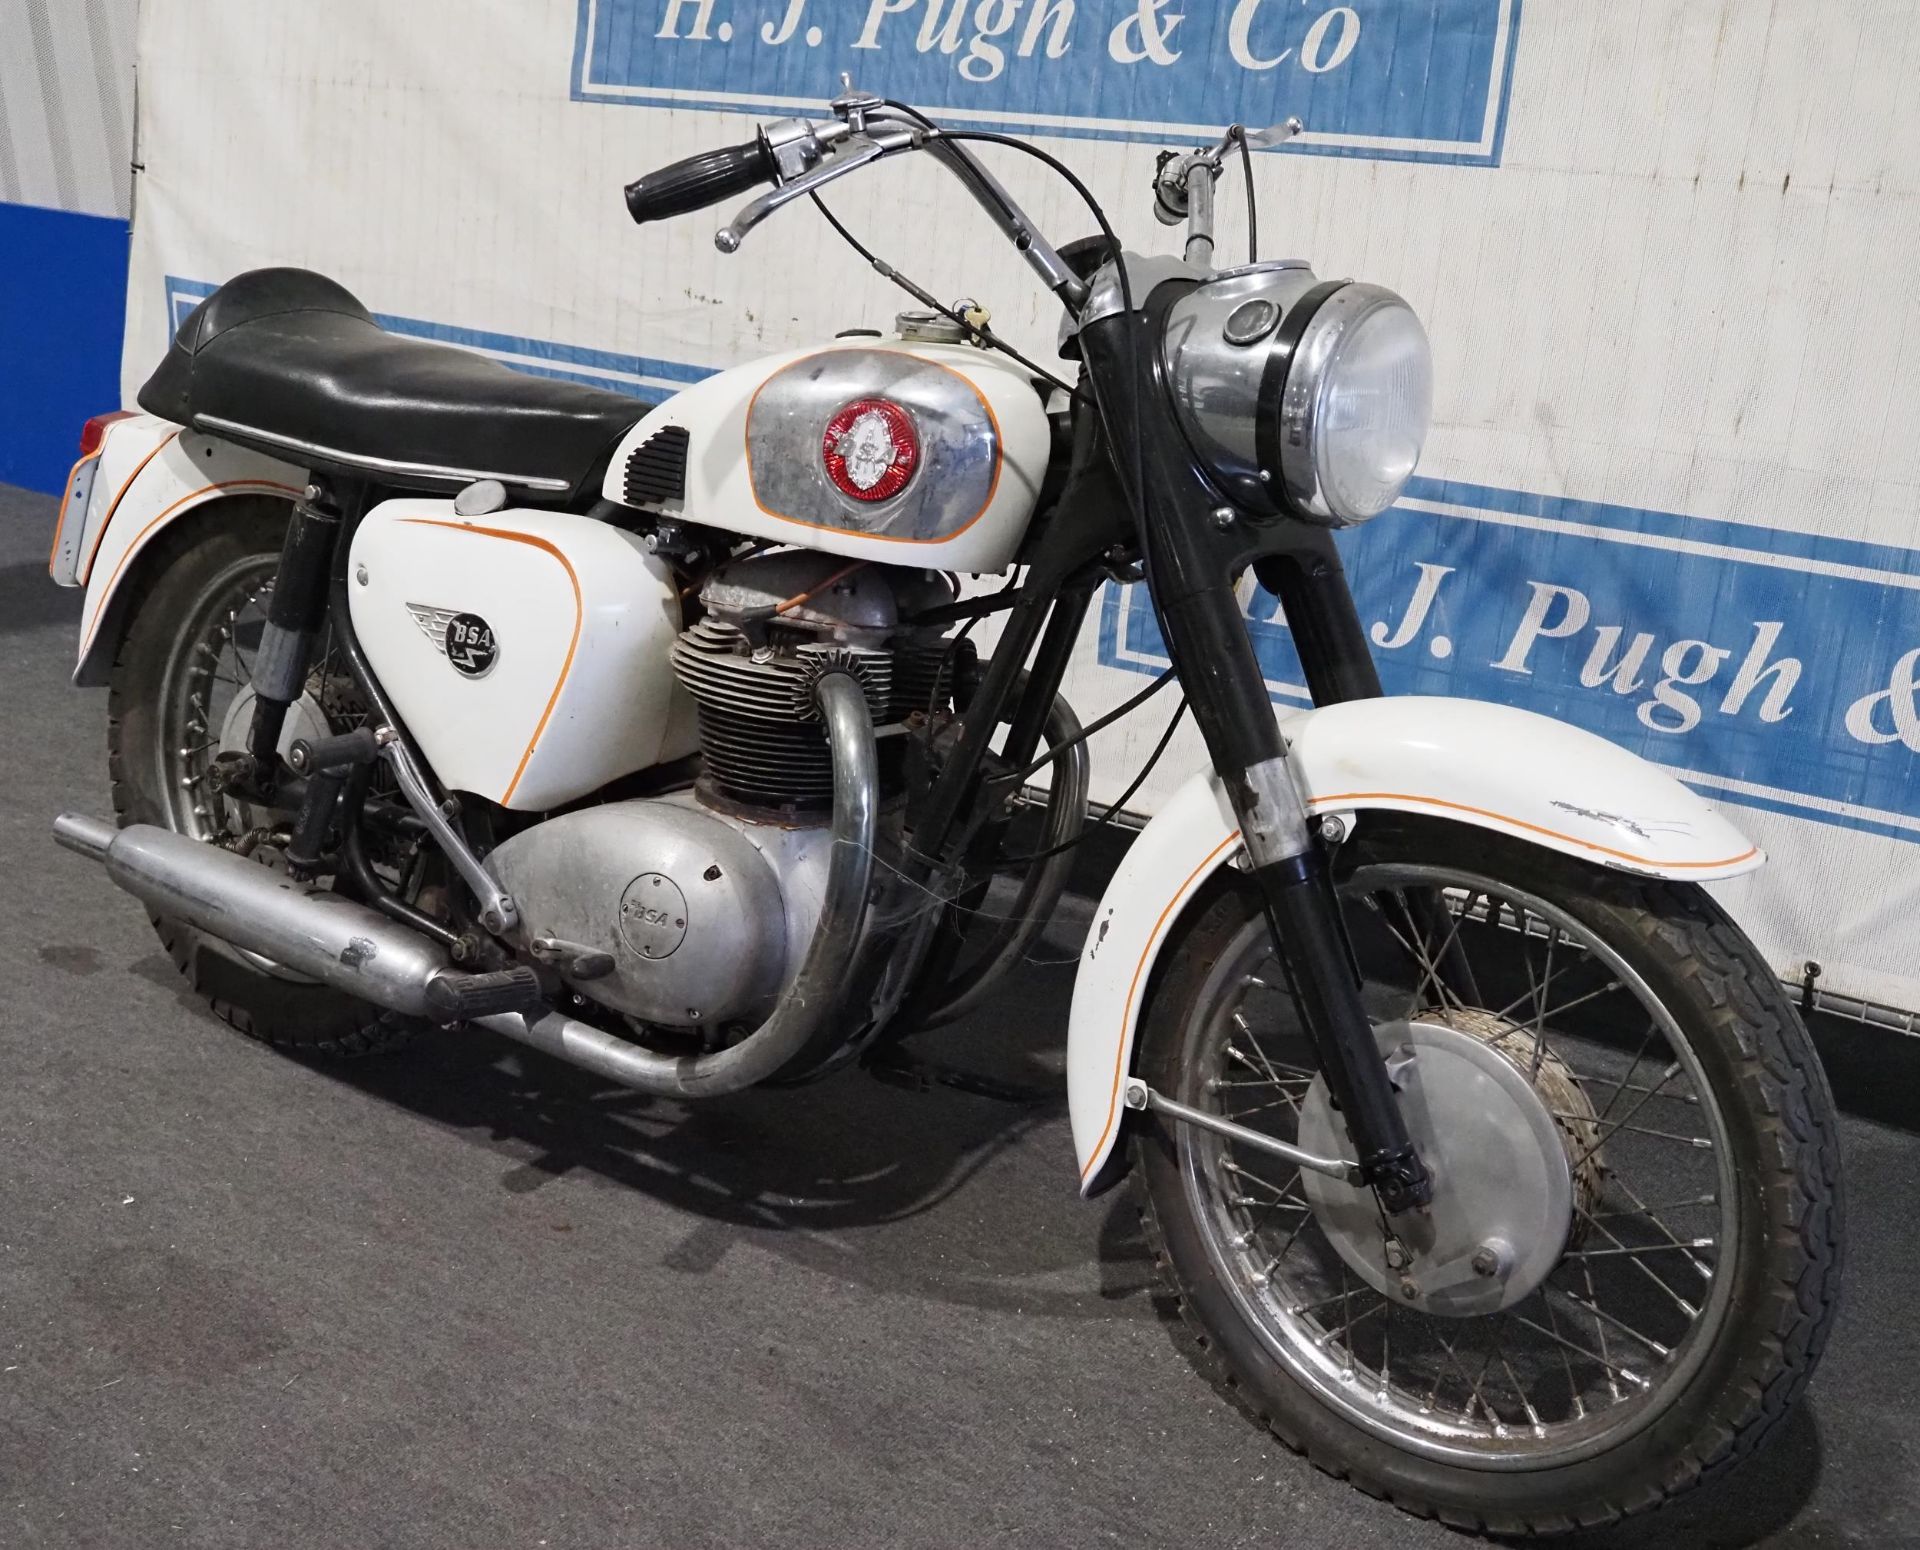 BSA A65 Thunderbolt motorcycle. 1962. Frame No. A50781. Engine No. A65636. C/w Nova docs - Image 2 of 5